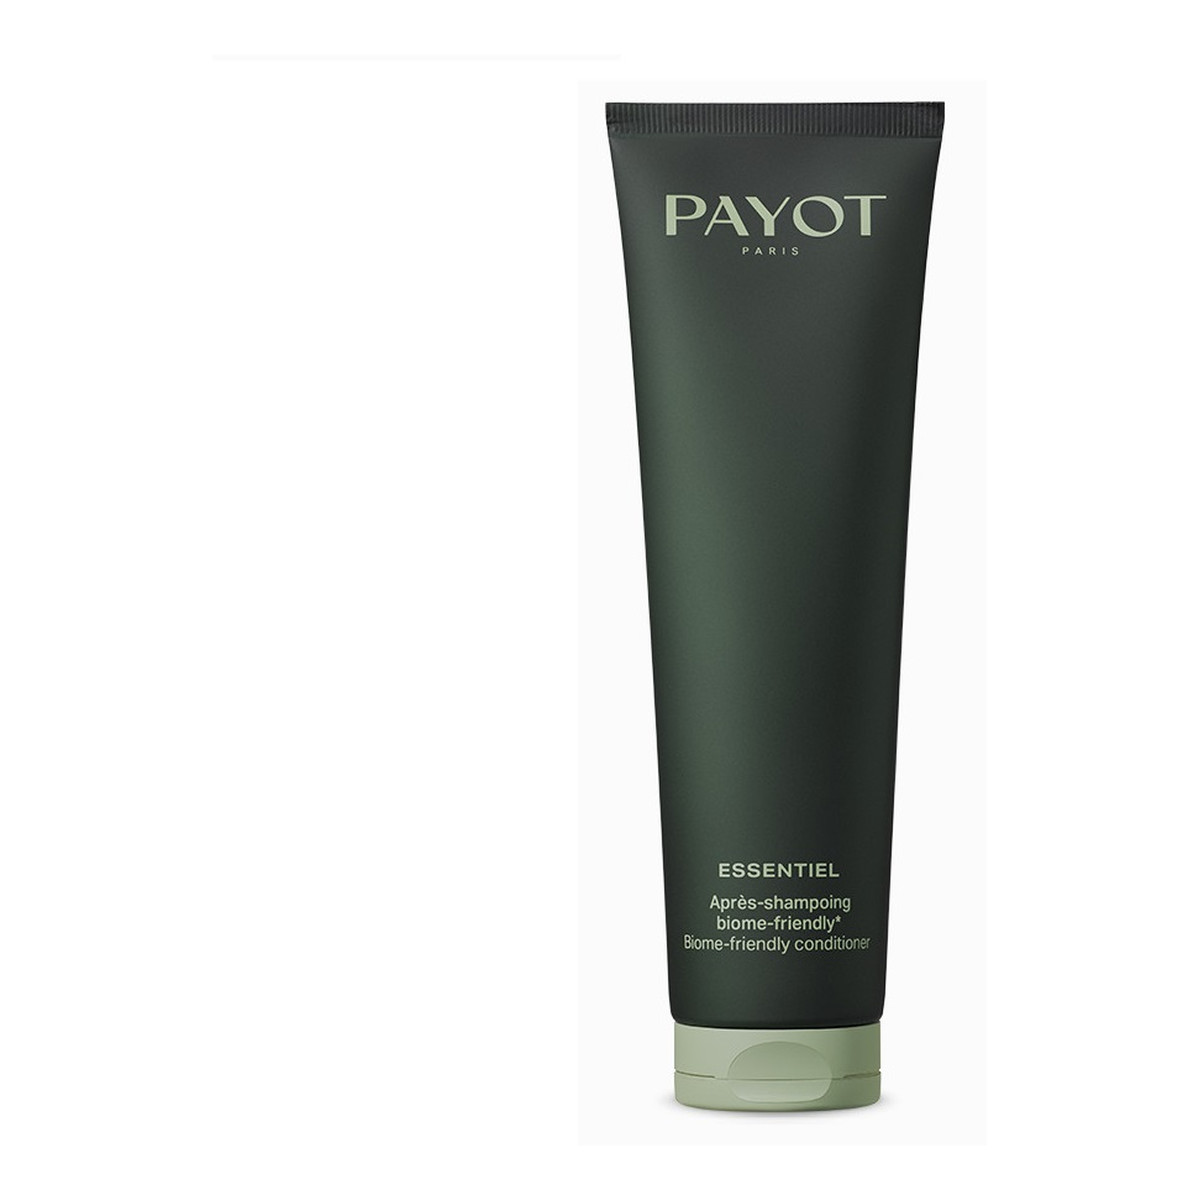 Payot Essentiel apres-shampoing biome-friendly kuracja regenerująca włosy 150ml